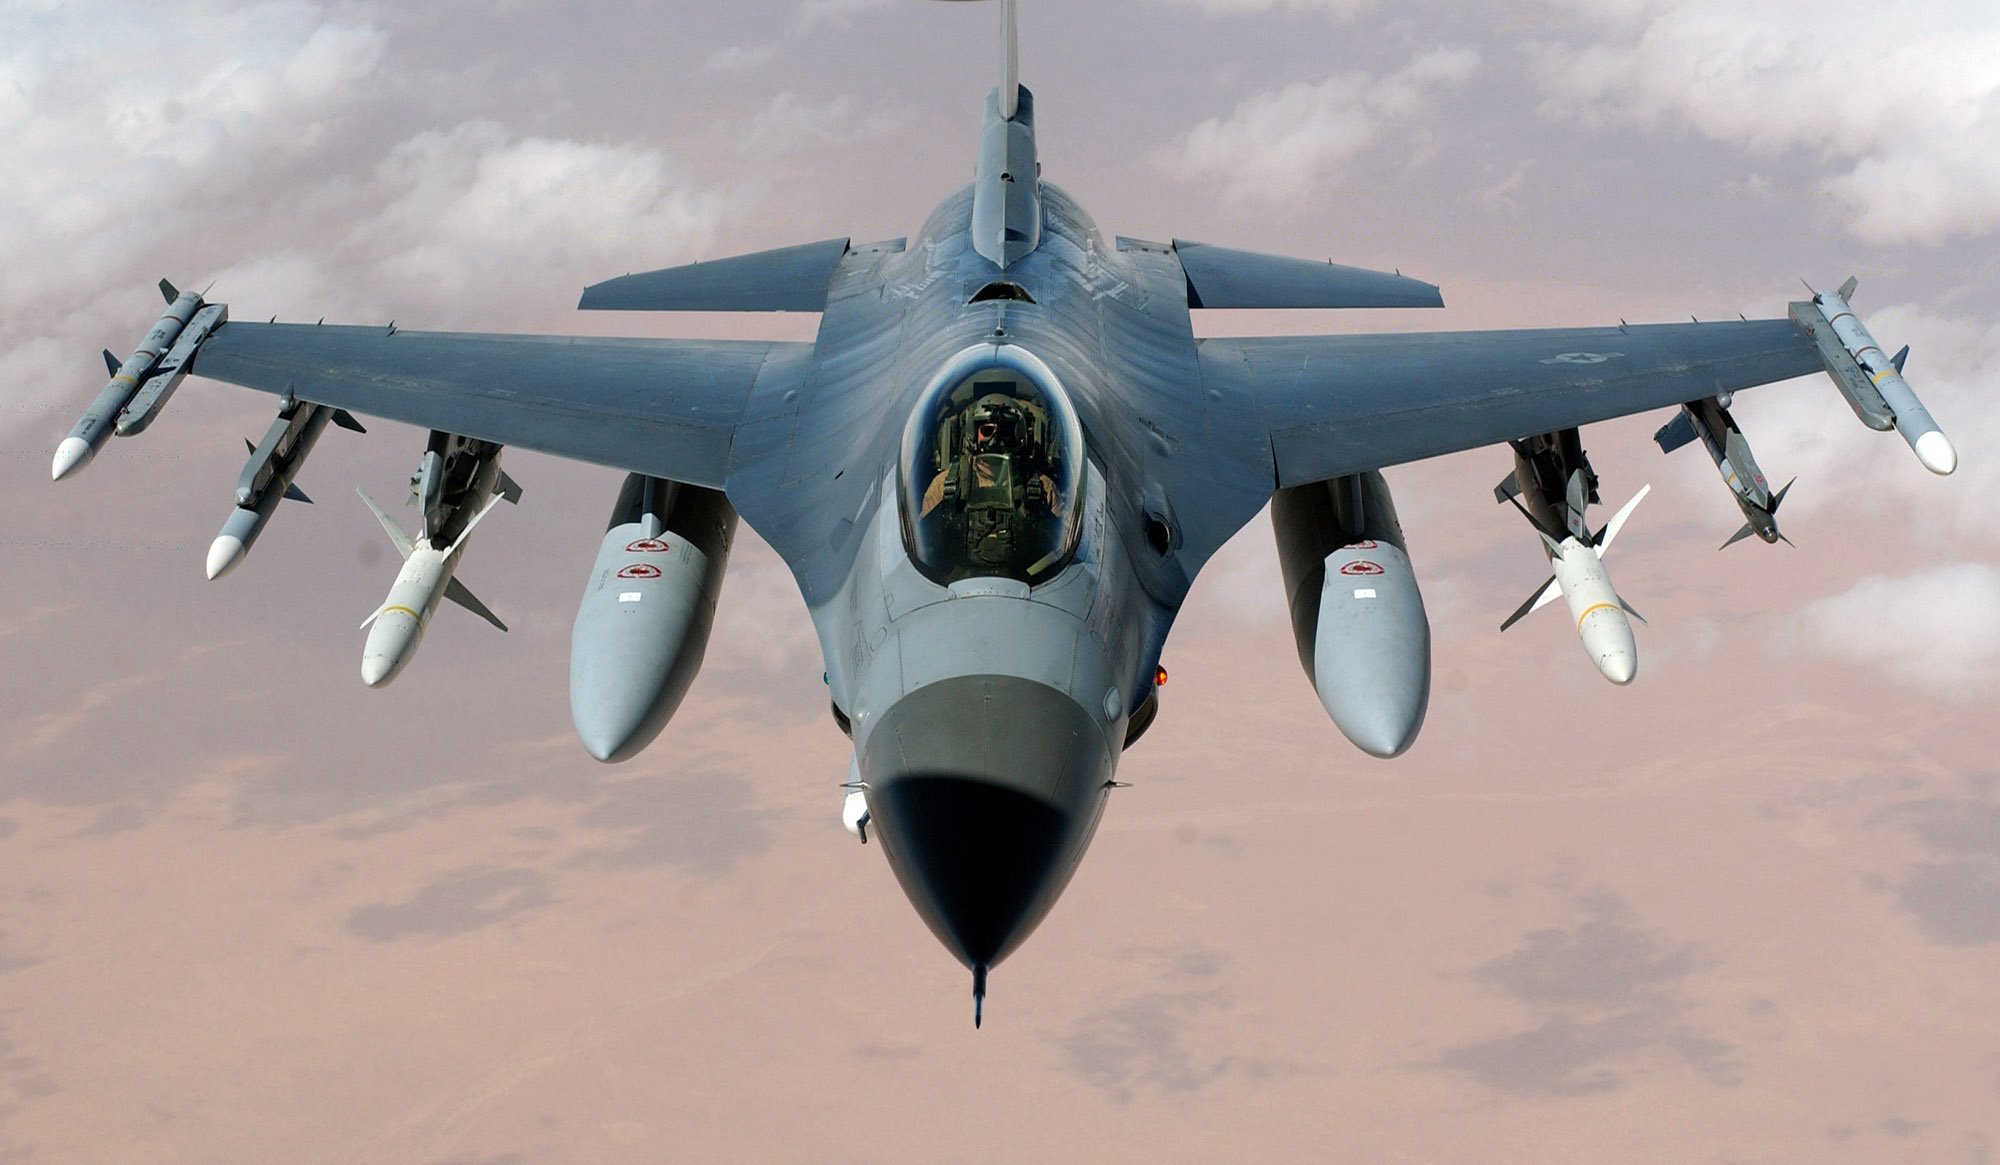 Η Άγκυρα εξοπλίζεται και κλιμακώνει: Ανακοίνωσε την έναρξη διαδικασιών για την απόκτηση 40 νέων F-16 από τις ΗΠΑ